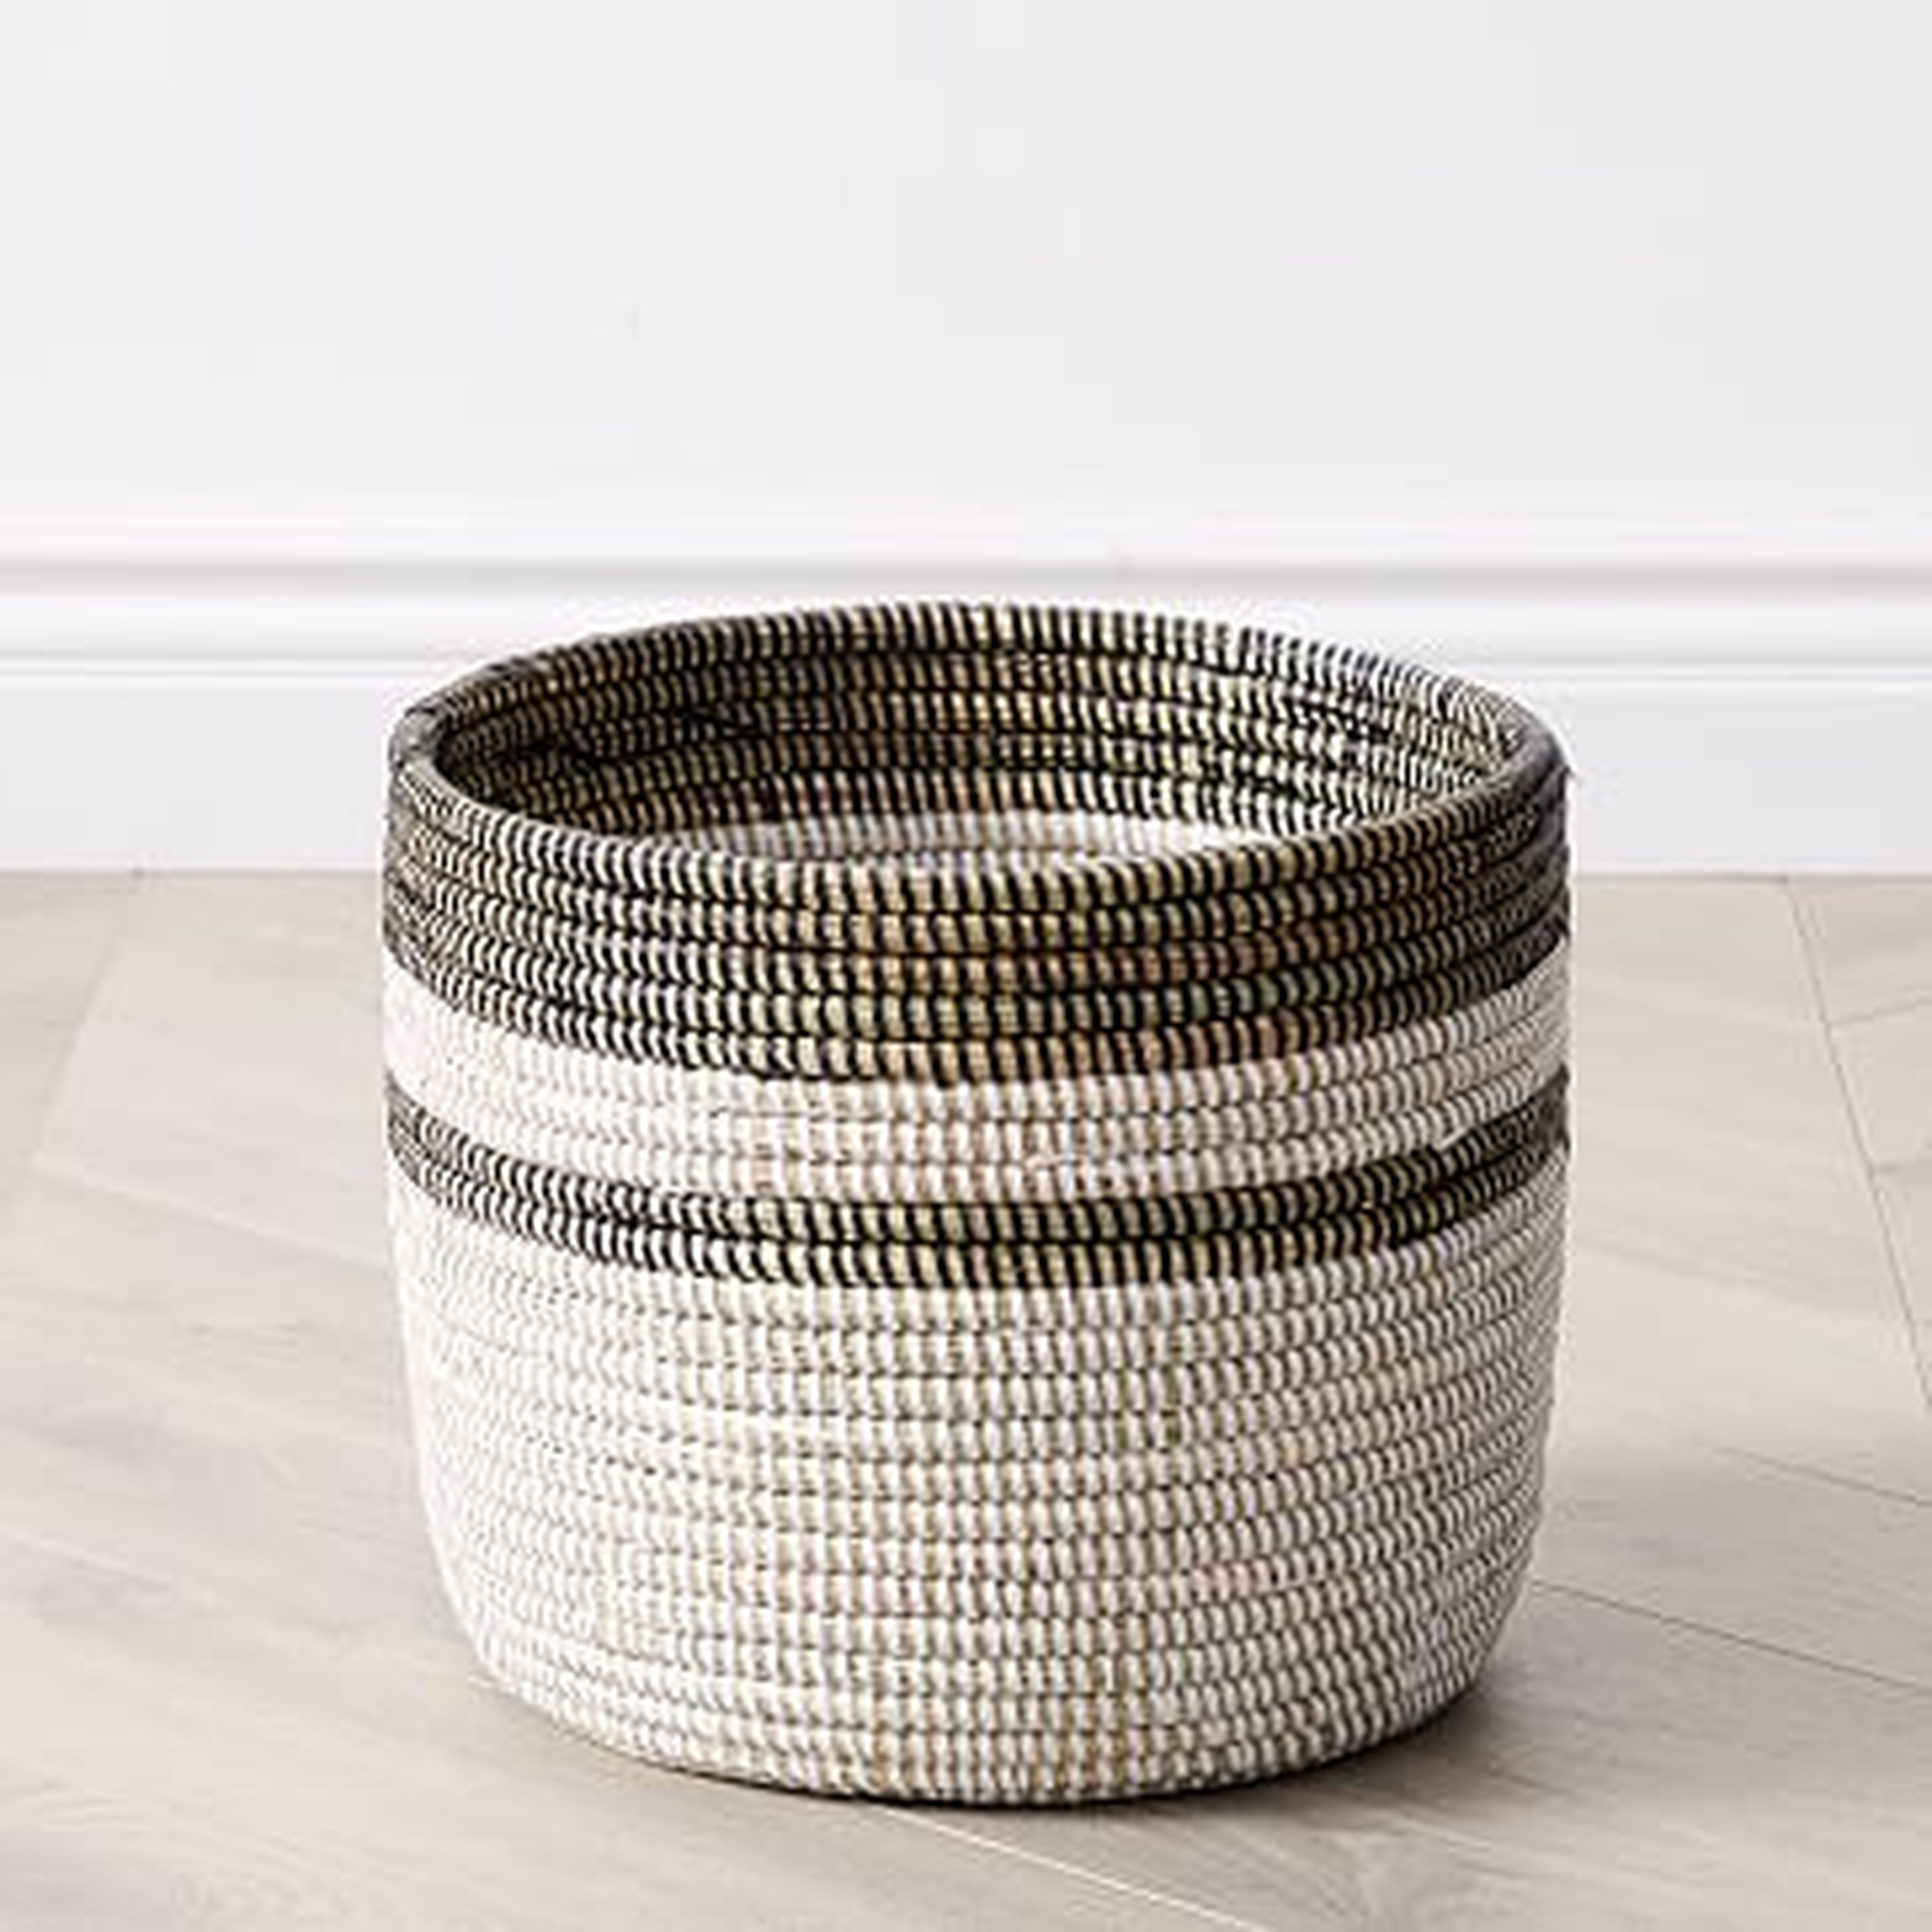 Colorblock Woven Basket Floor Planter, Small, 12.5"D x 13.5"H, White & Black, - West Elm